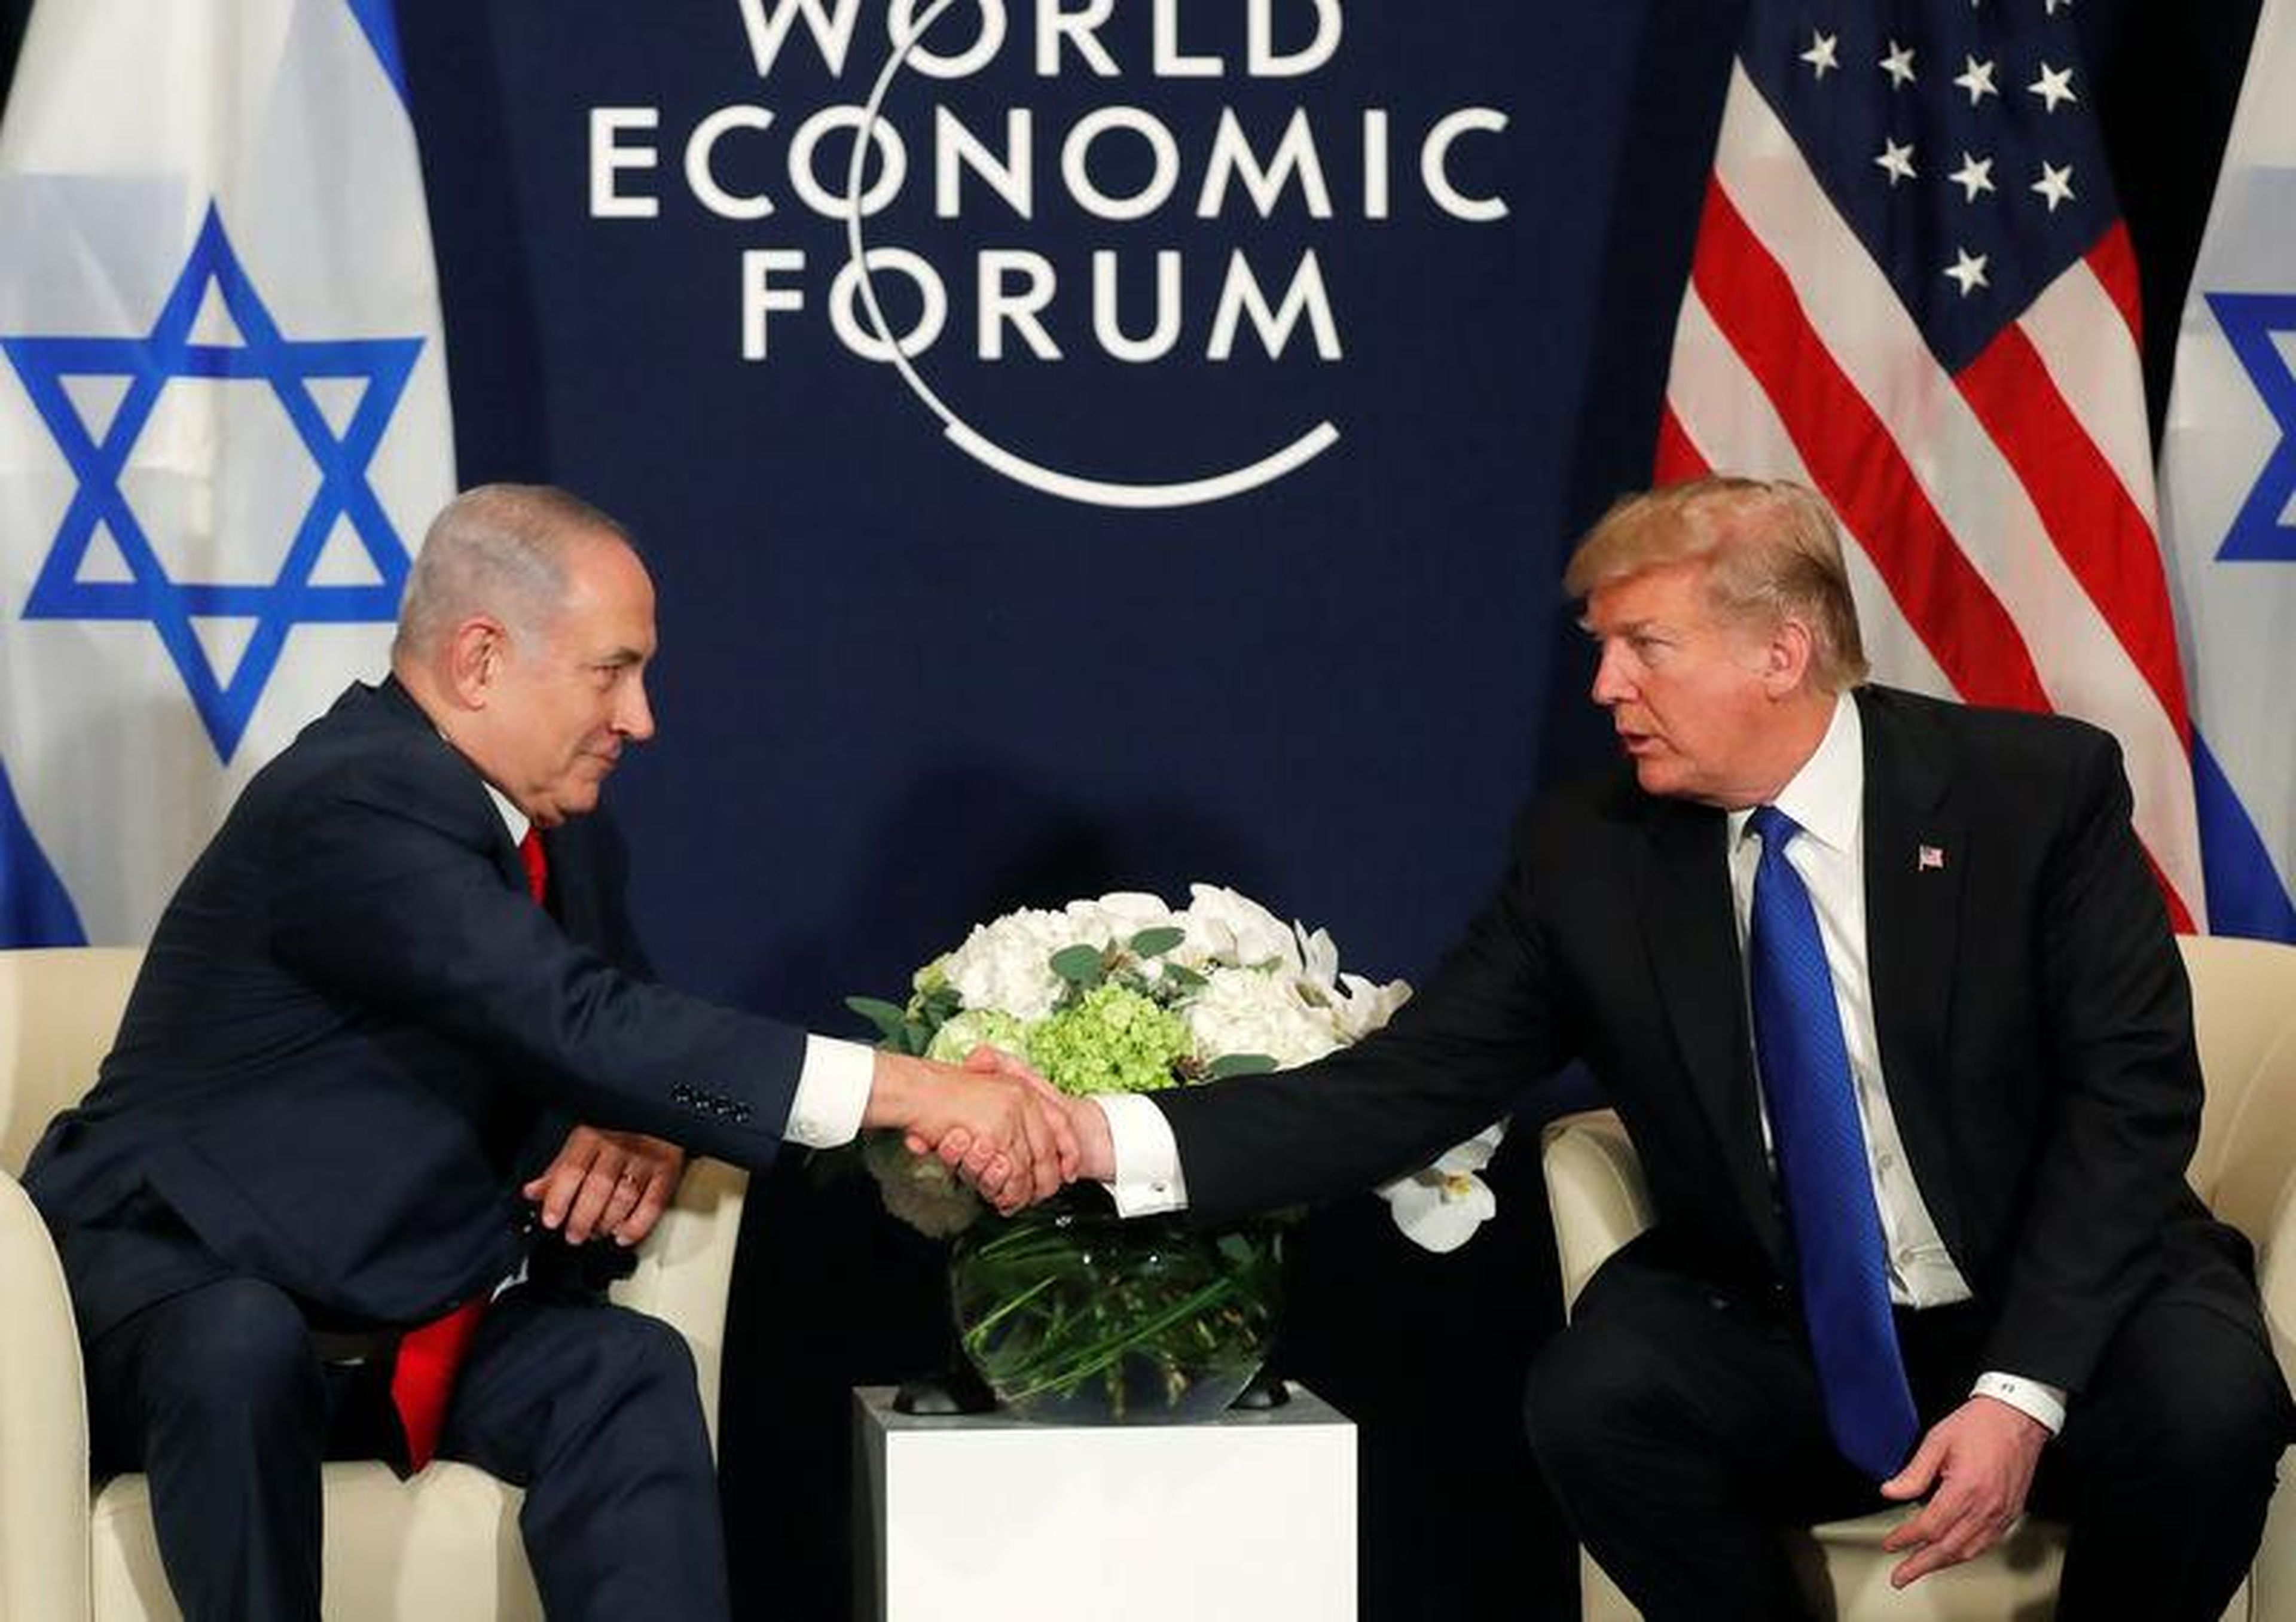 El presidente de Estados Unidos, Donald Trump, estrecha la mano del primer ministro israelí Benjamin Netanyahu durante la reunión anual del Foro Económico Mundial en Davos en enero de 2018.